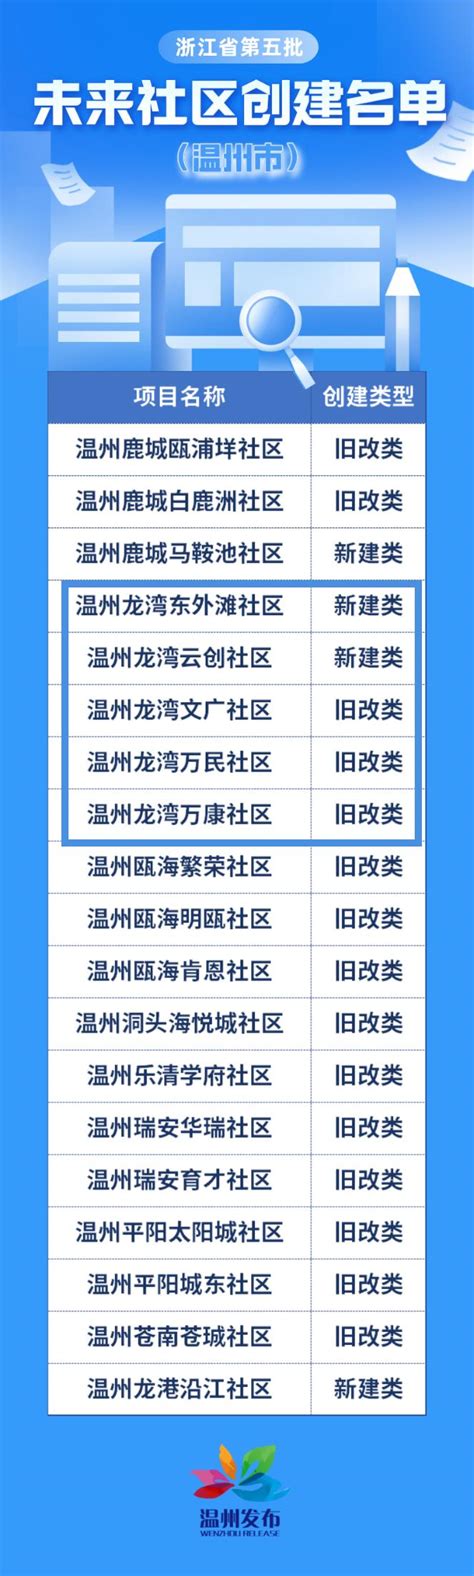 永兴综合行政执法中队开展“小广告”专项整治行动 - 龙湾新闻网